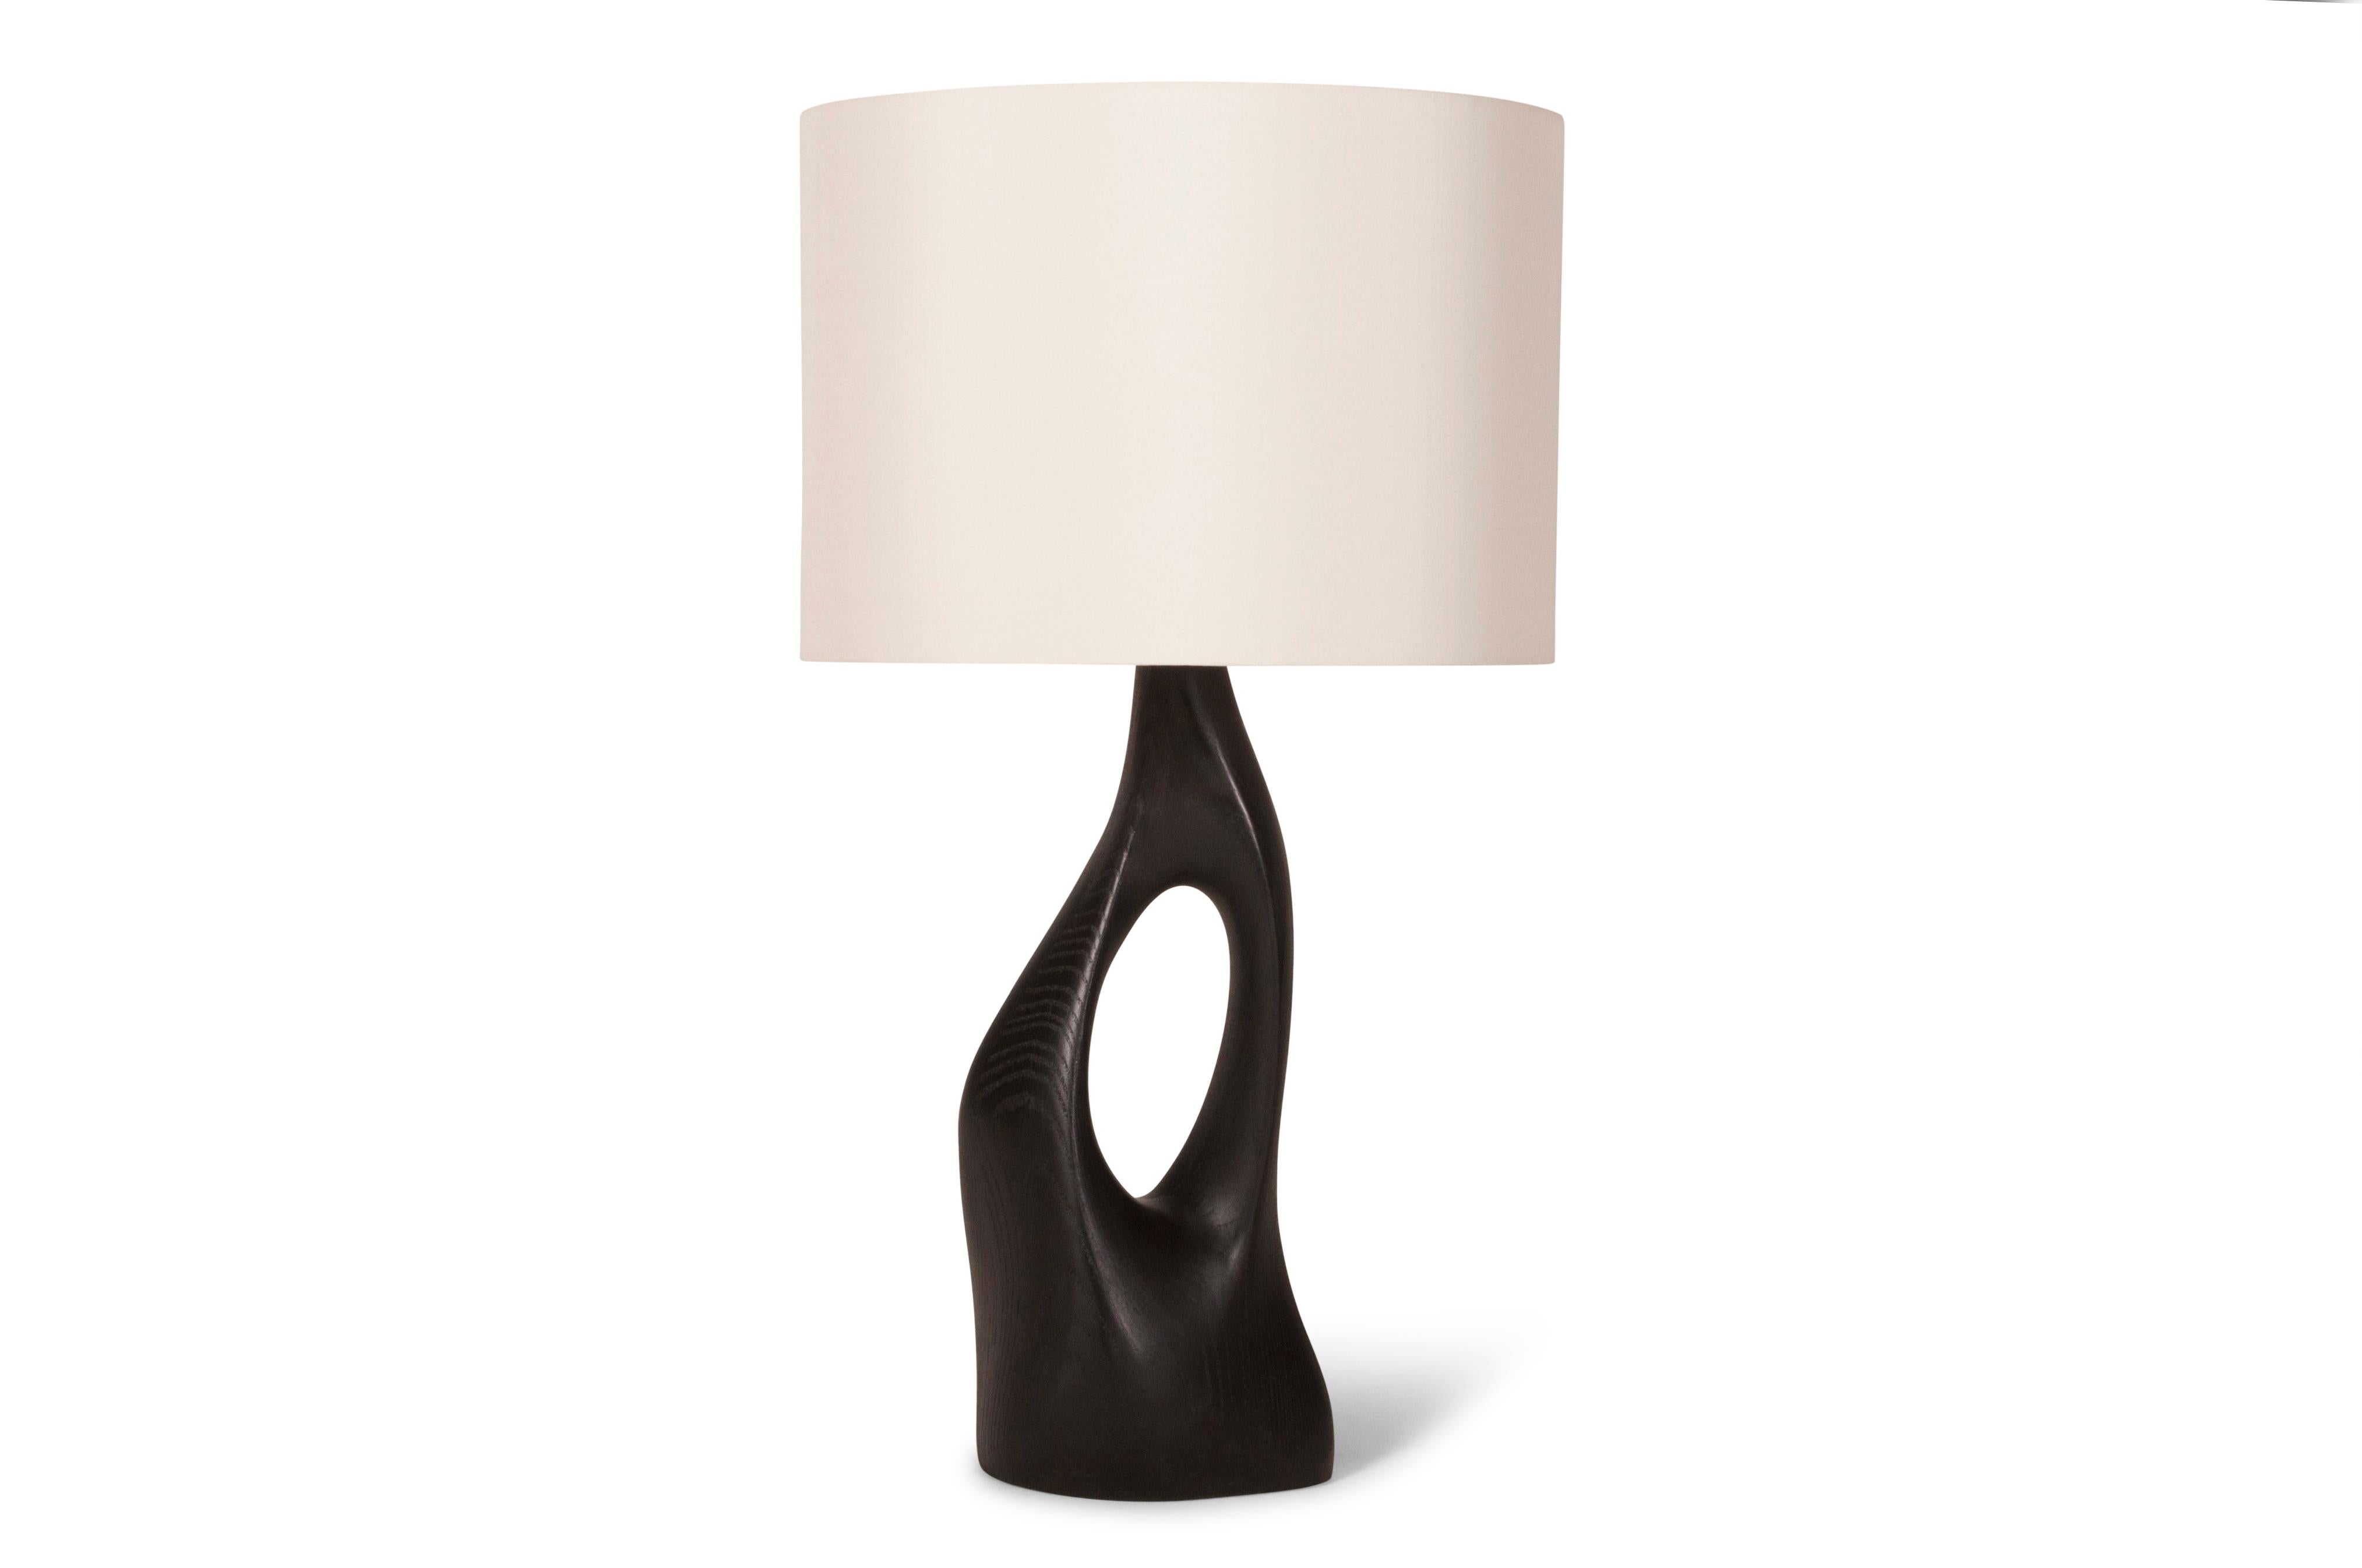 Lampe de table sculpturale en MDF avec finition en métal froid. Couleur : or blanc.
Dimension de la base : 16